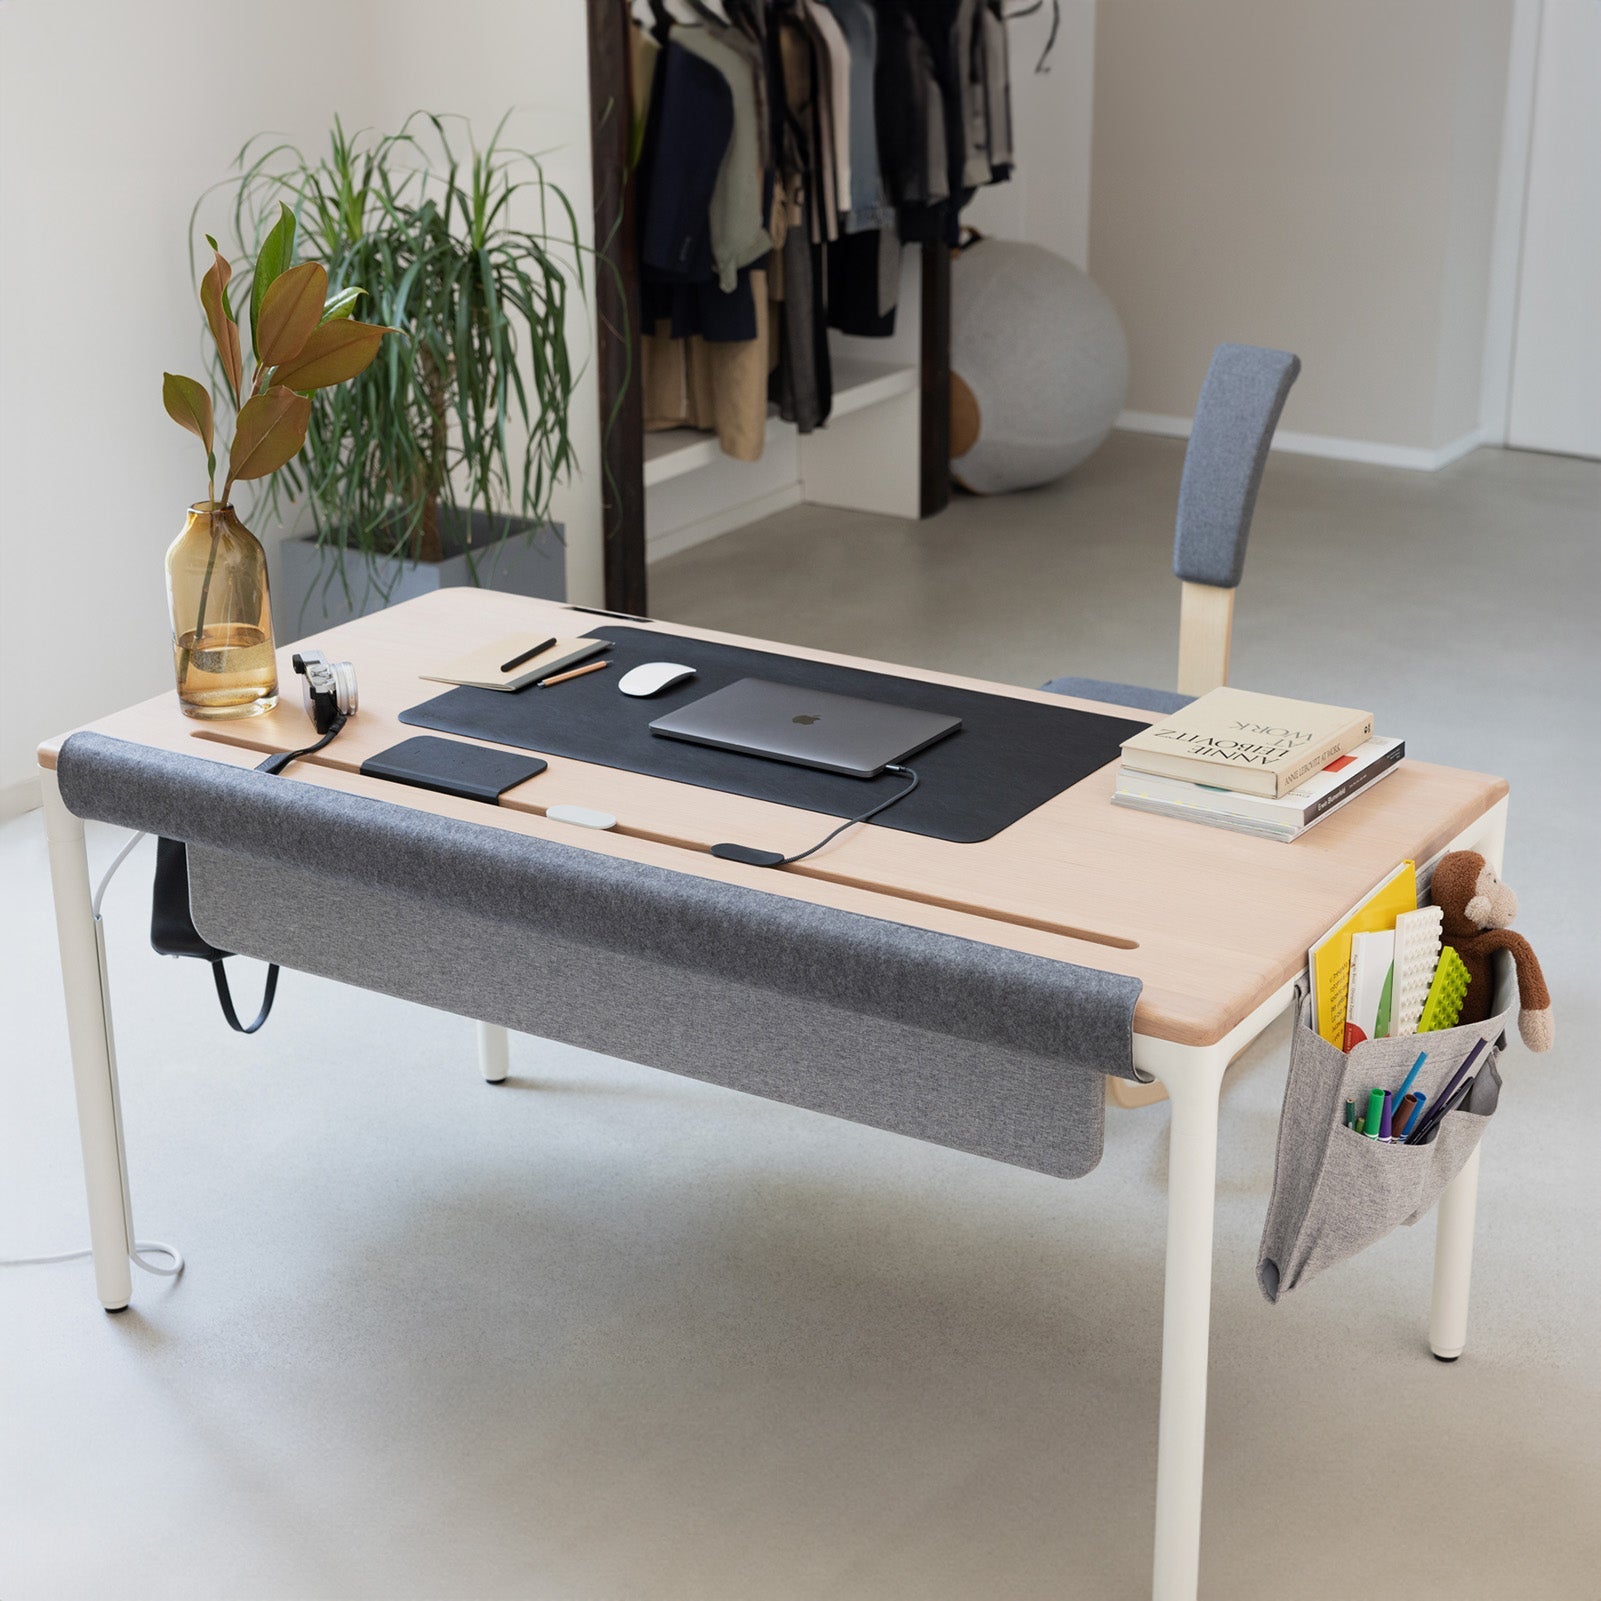 Desks & Tables, Office Furniture